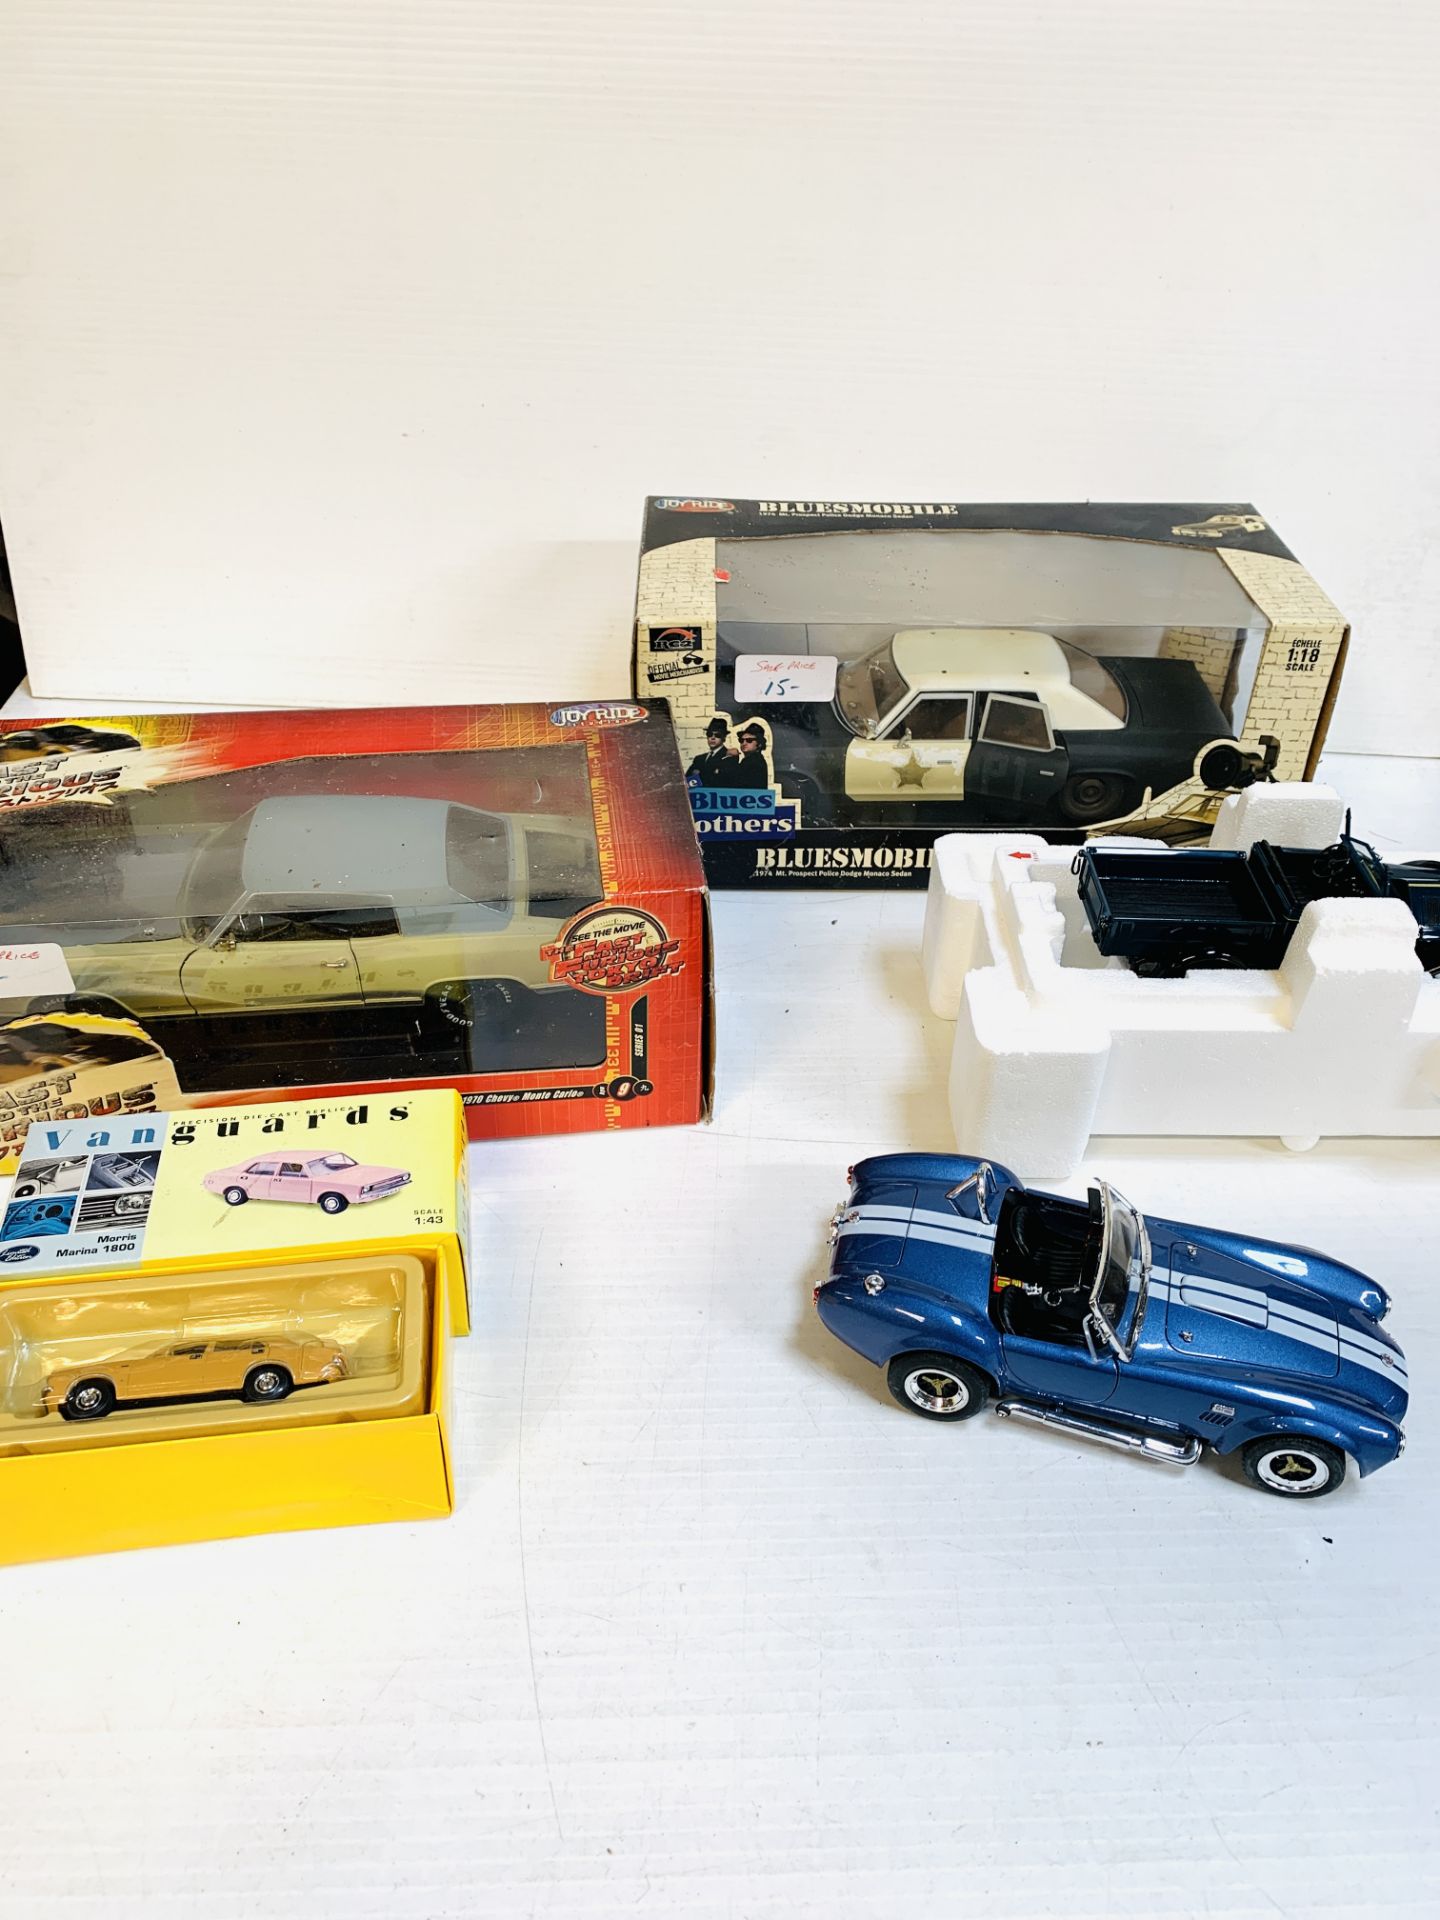 "Bluesmobile" police sedan; 1971 Chevrolet Roadster pickup; Chevy Monte Carlo; Shelby 427S/C model